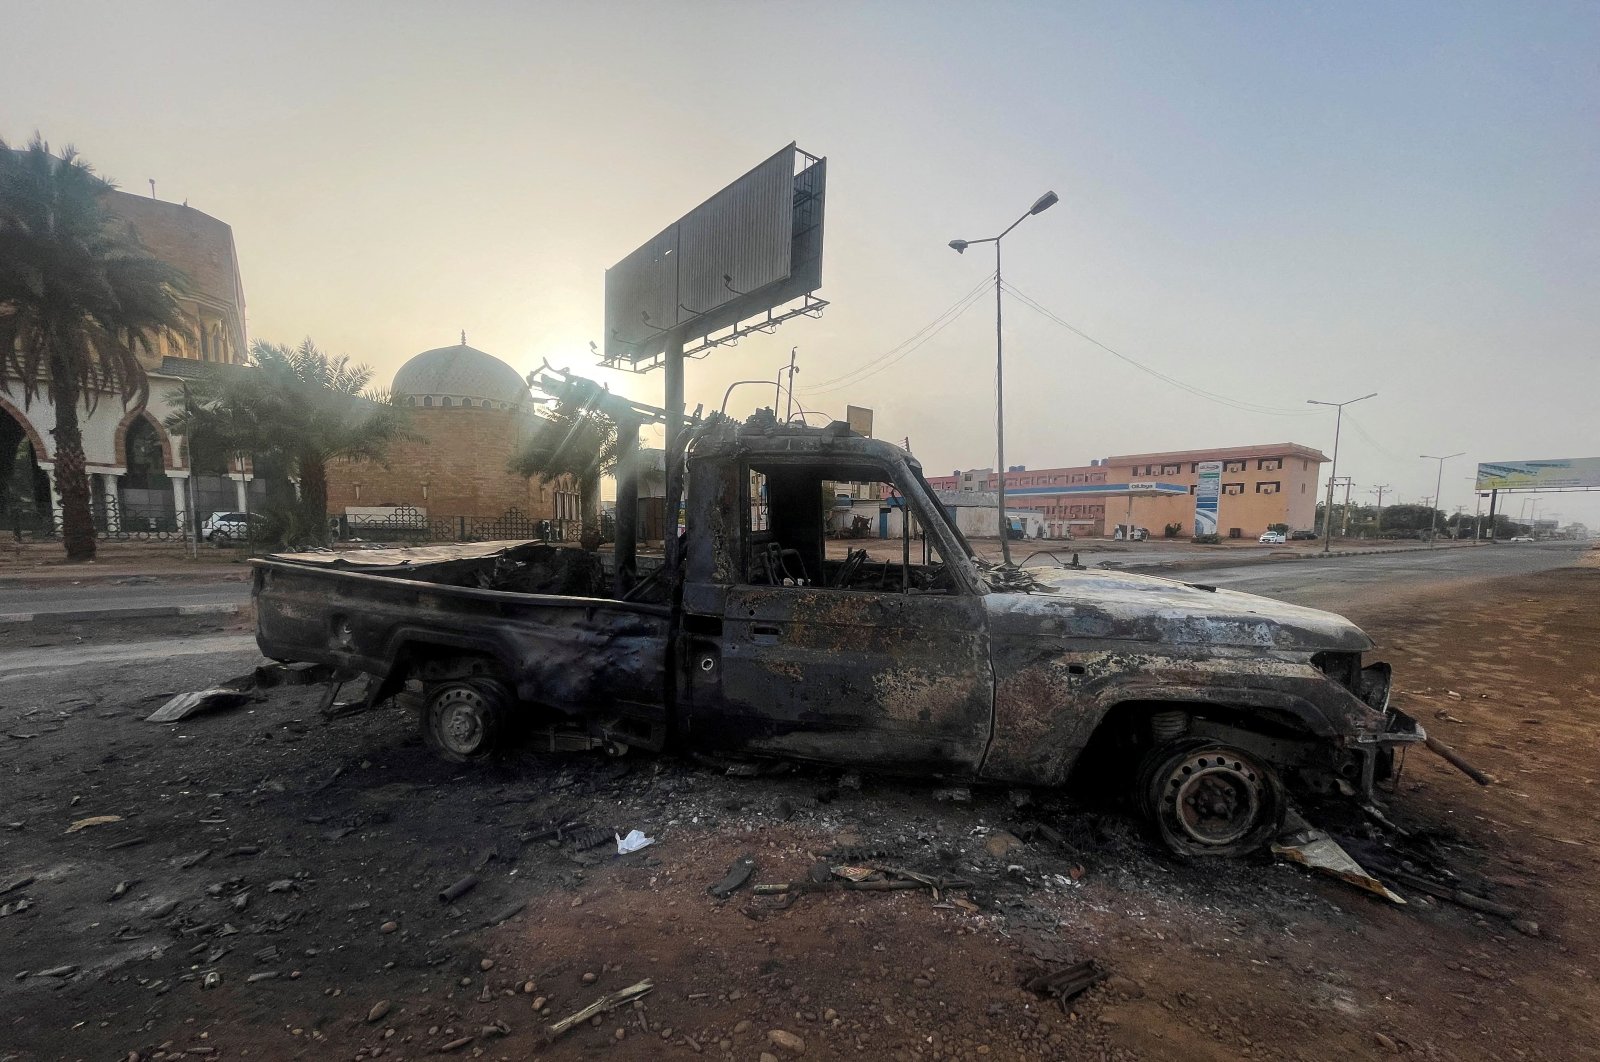 Pertempuran Sudan berkecamuk saat saingan saling menyalahkan atas pelanggaran gencatan senjata